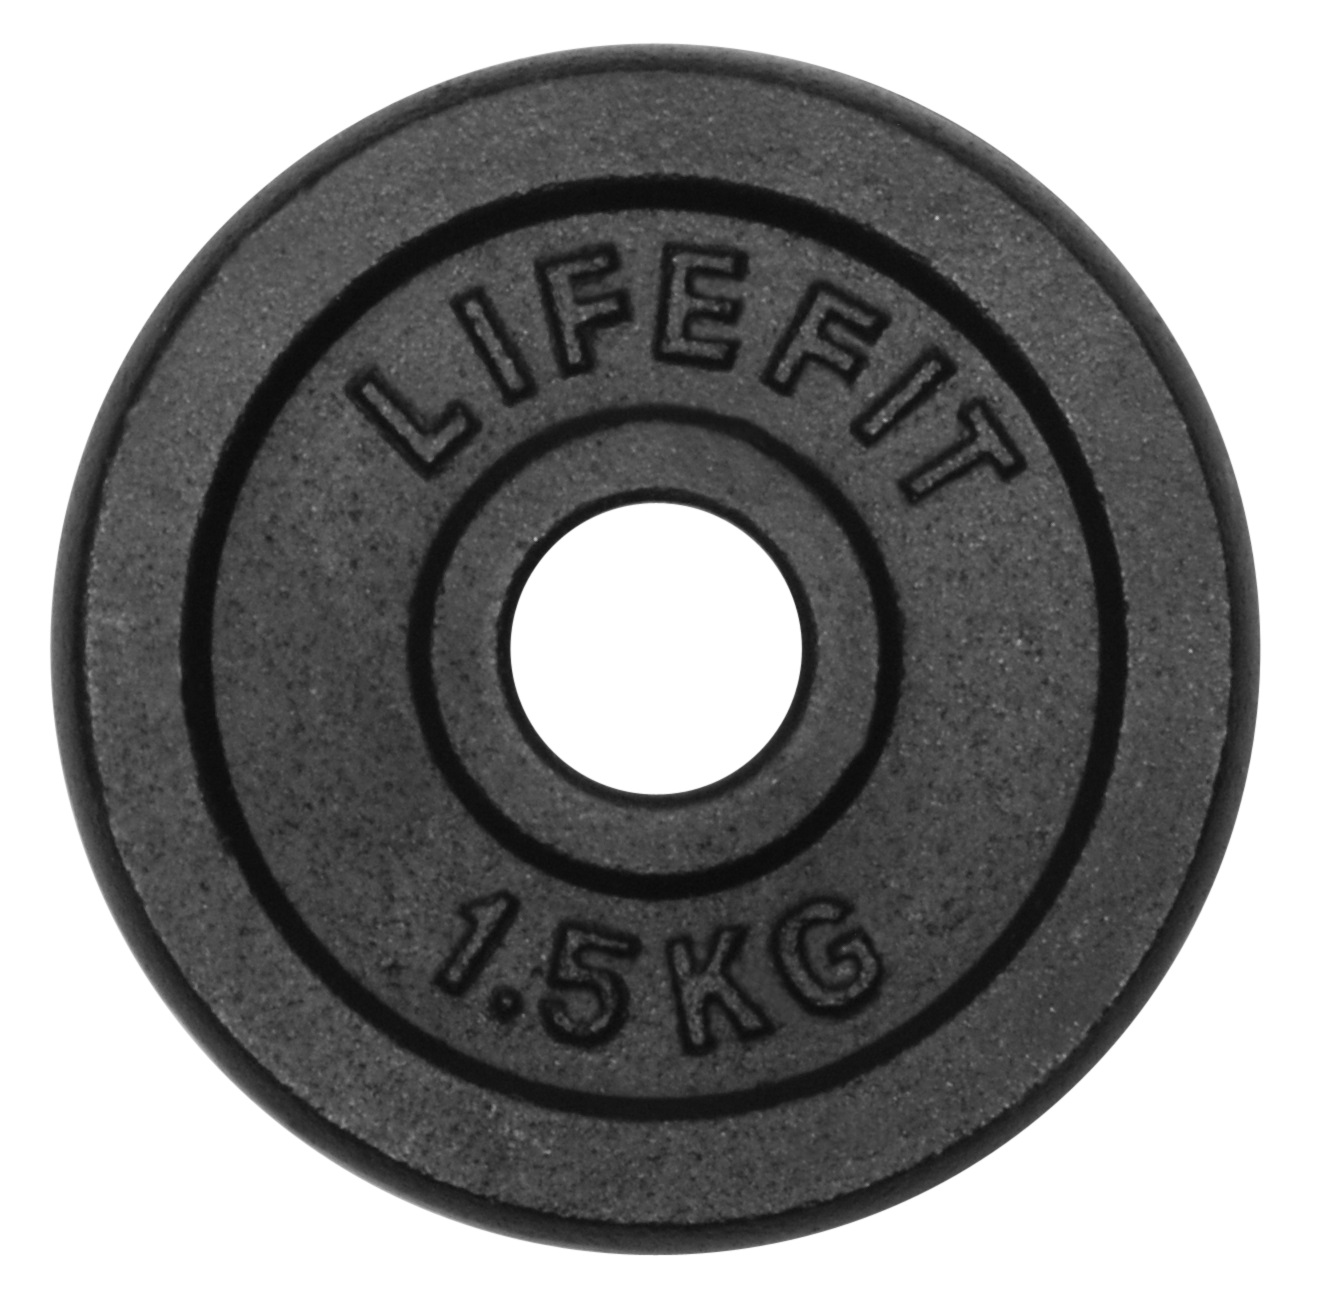 Kotouč LIFEFIT 1,5kg, kovový, pro 30mm tyč